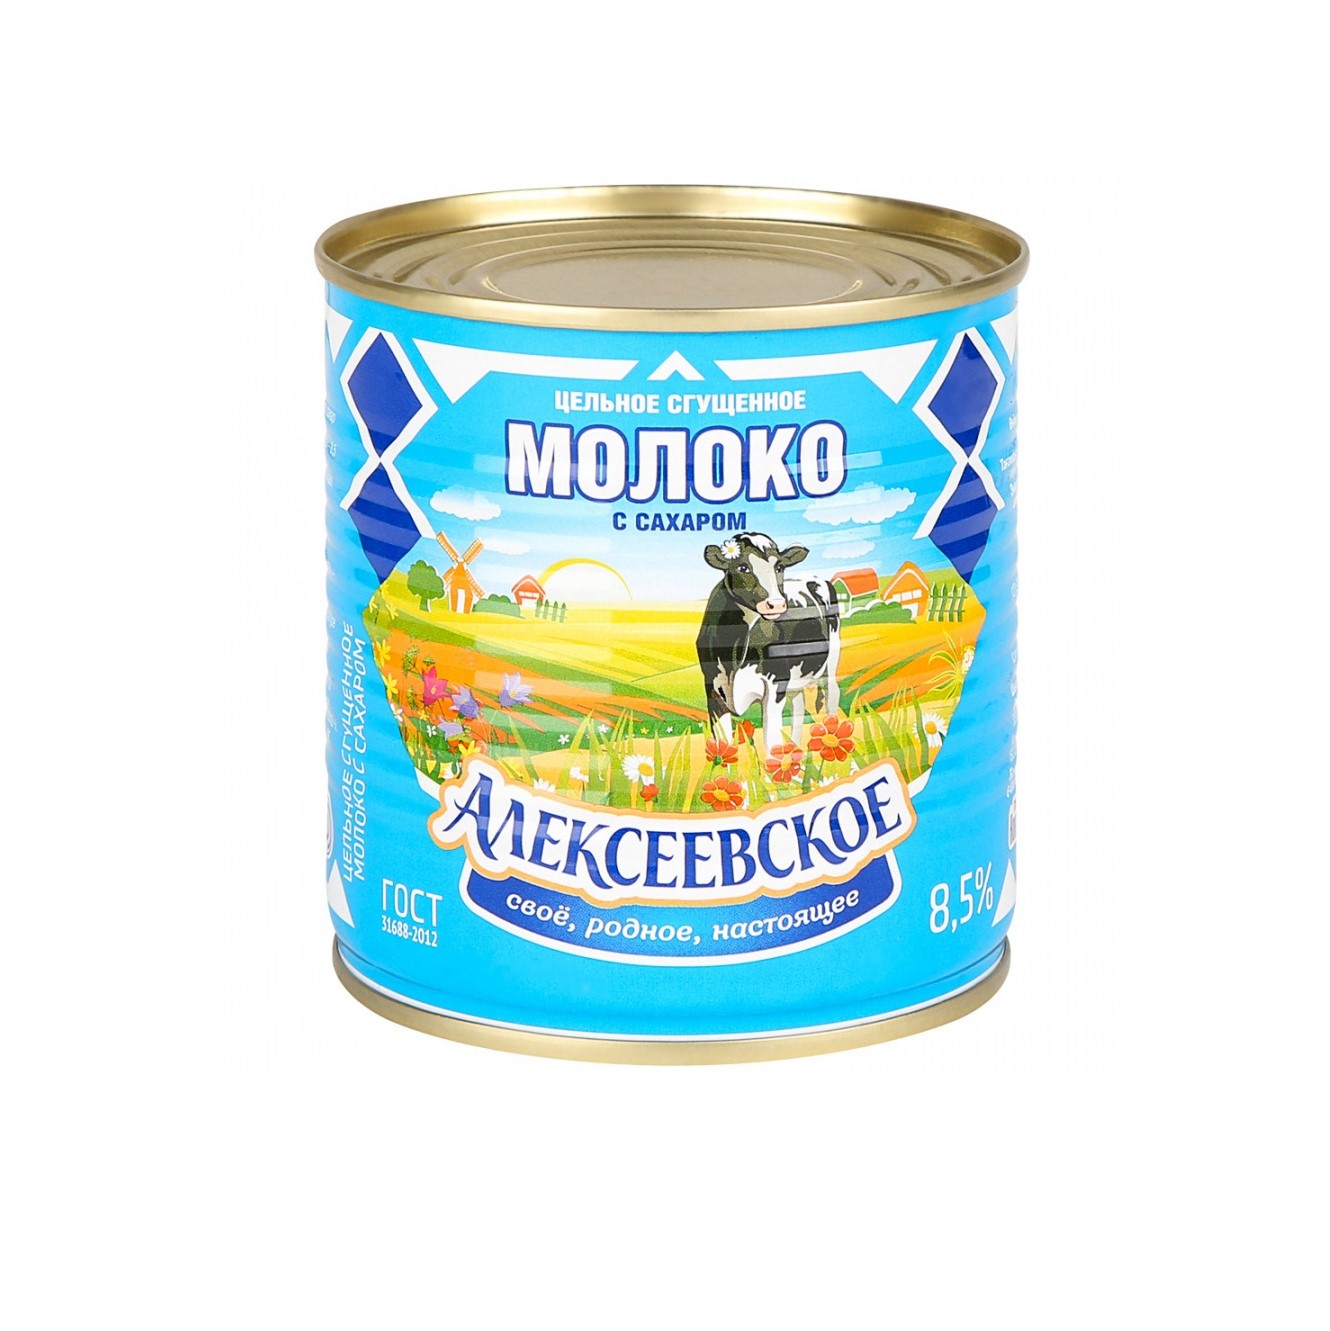 Молоко Алексеевское сгущенное с сахаром 8,5%, 360 г молоко сгущённое цельное алексеевское с сахаром 8 5% 360 г